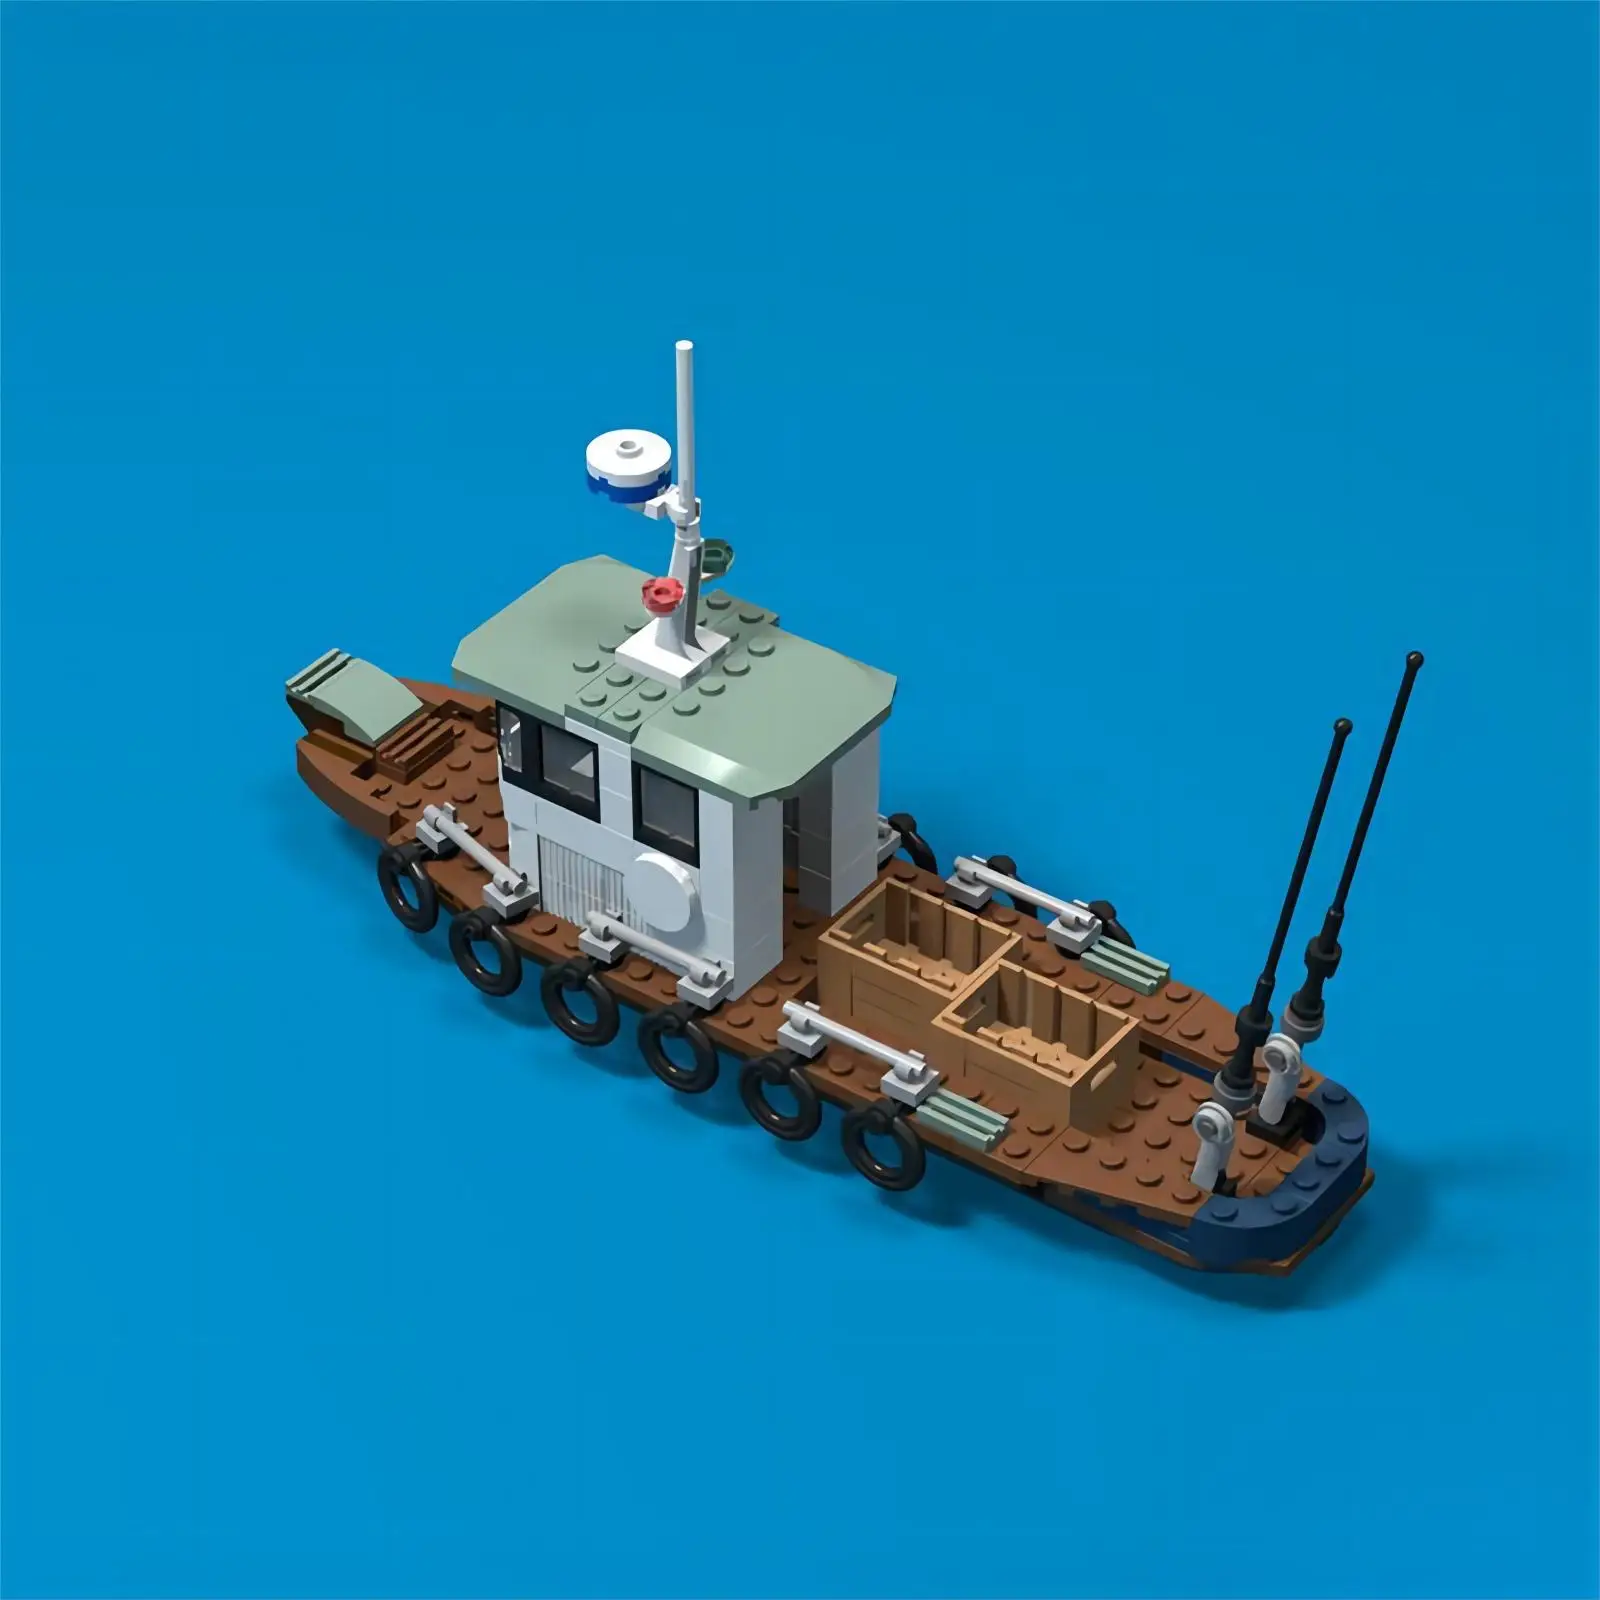 https://ae01.alicdn.com/kf/S40b784babd8643b18ee4c638108d6e53r/Moc-60147-910010-60221-City-Fishing-Boat-Ship-Building-Blocks-Mini-Action-Figure-Toys.jpg